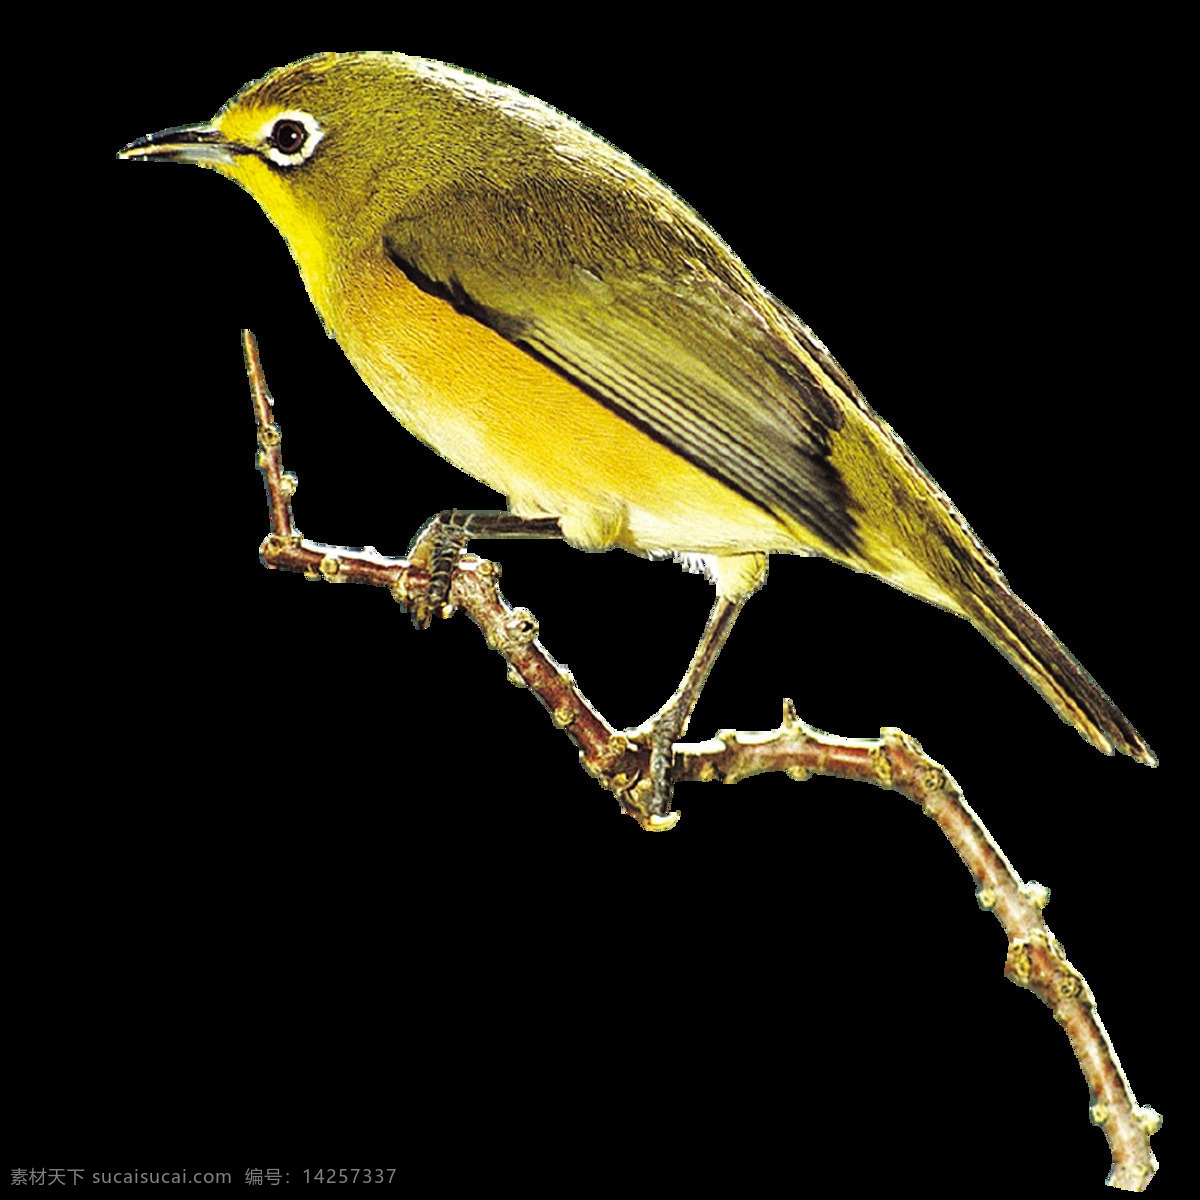 唯美 印象 鸟儿 绘画 黄色鸟儿 写实 生动刻画 美观 形象